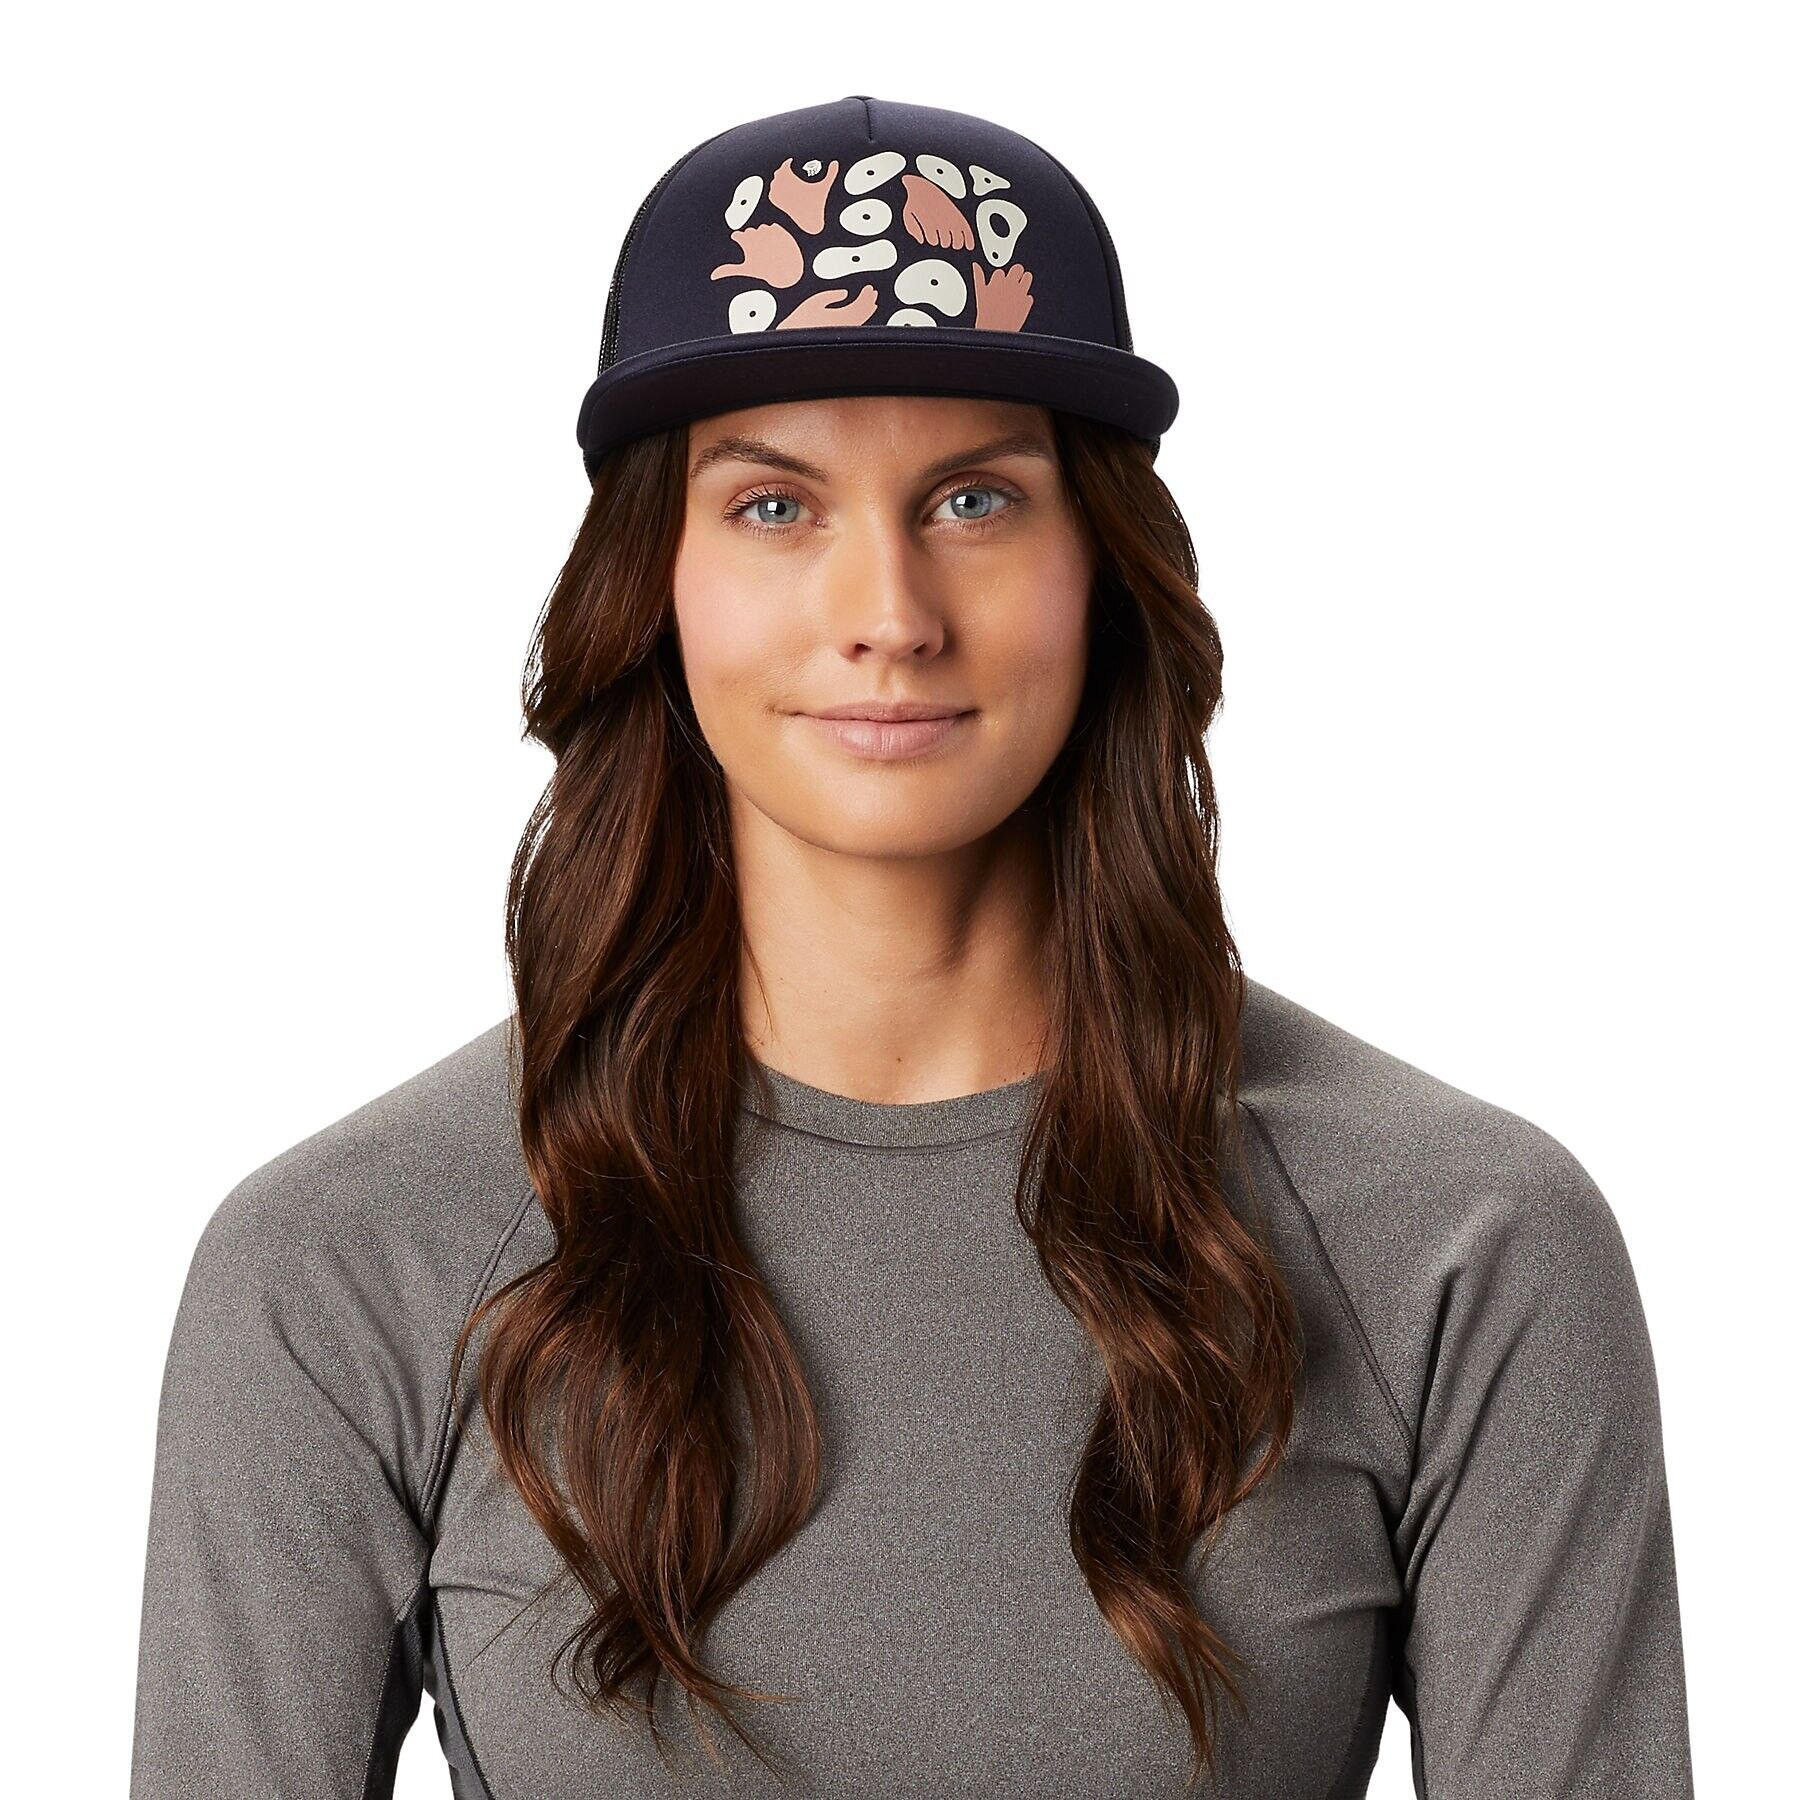 Mountain Hardwear Hand/Hold Trucker Hat - Cap - Women's